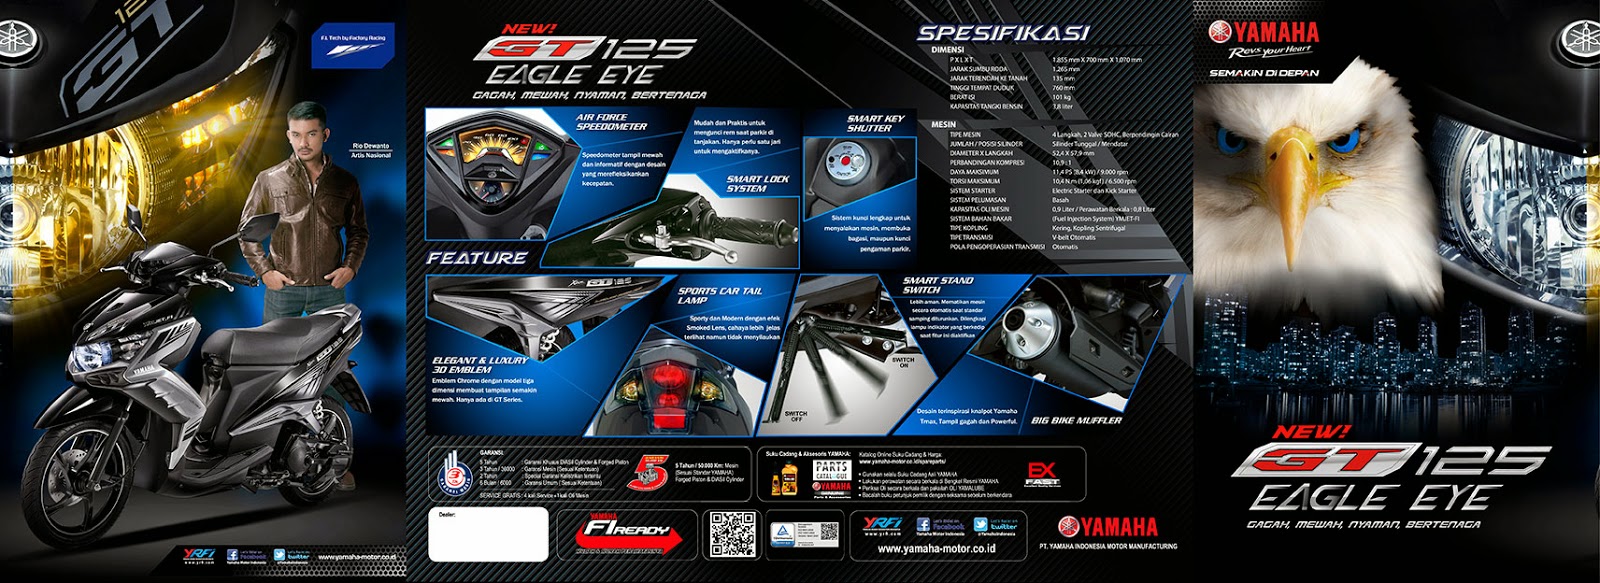 Harga dan Spesifikasi Yamaha GT 2014